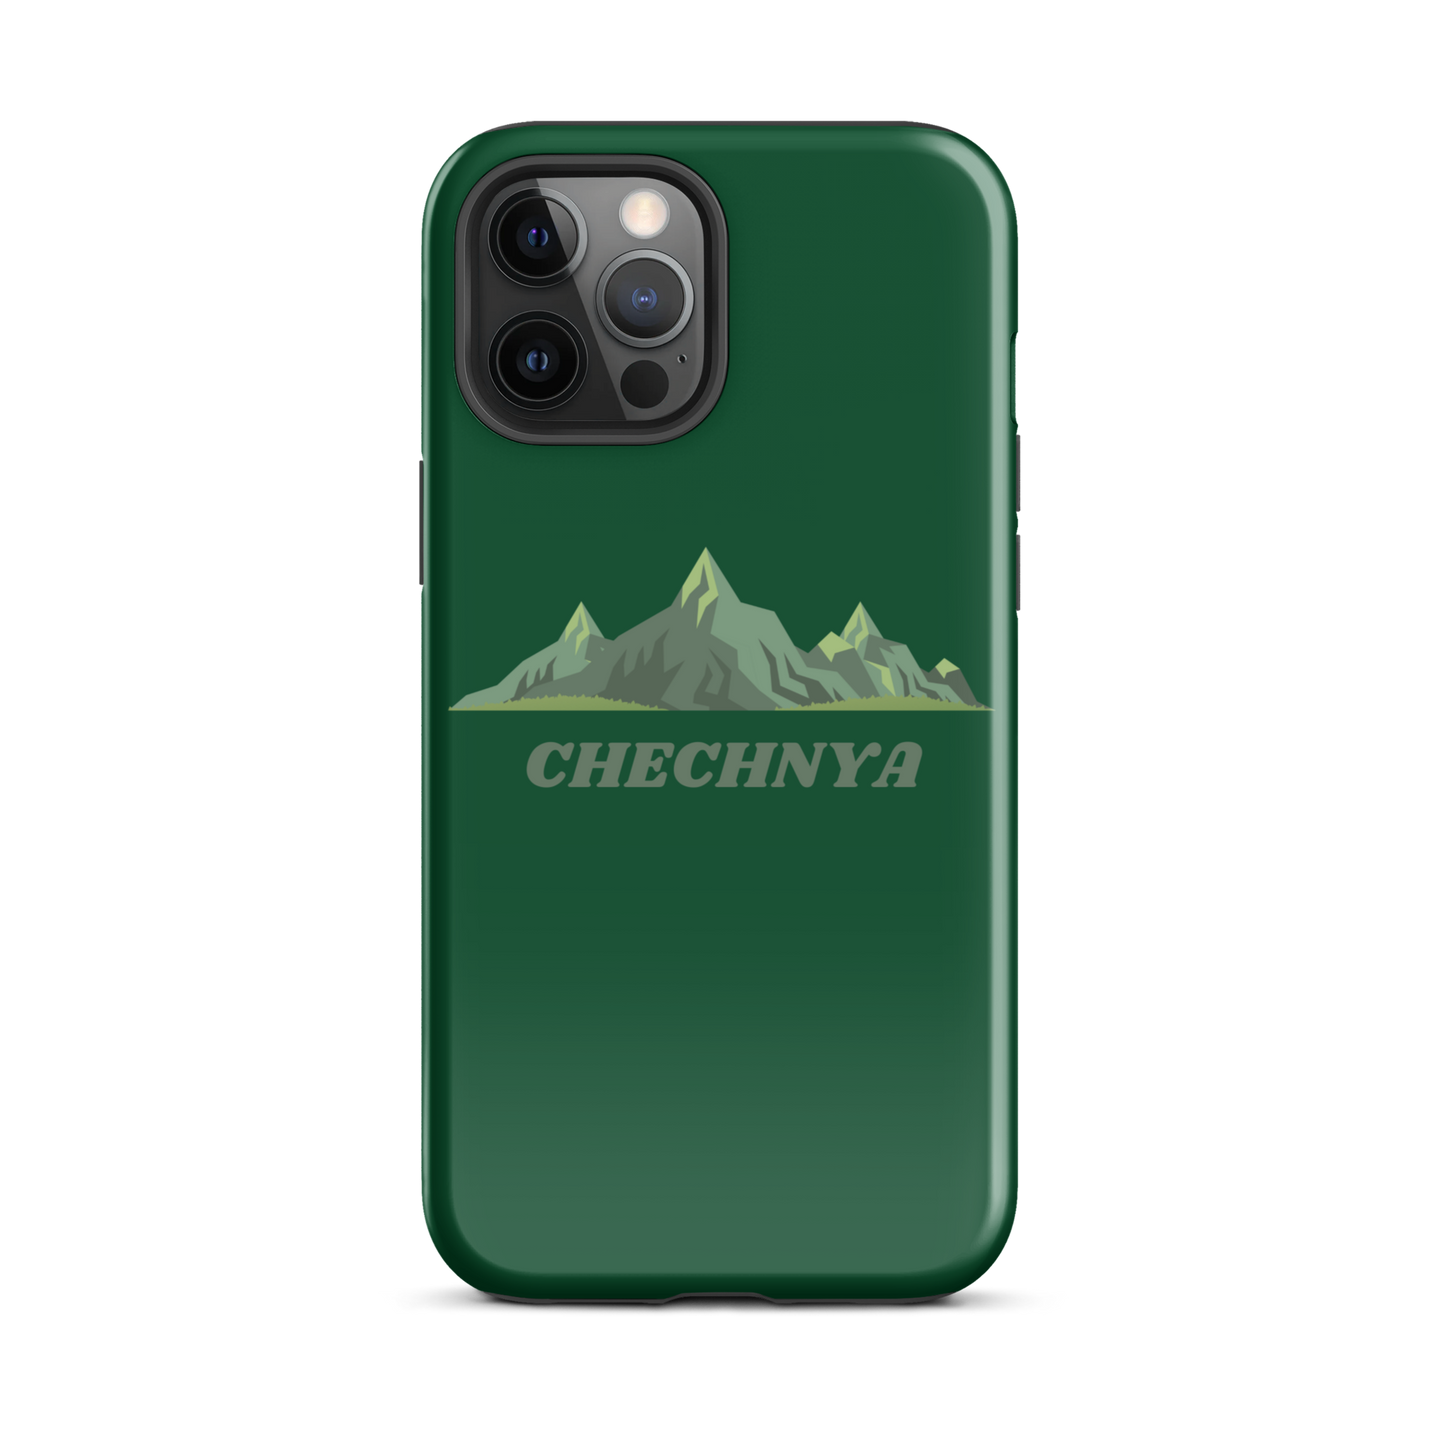 CHECHNYA - Green